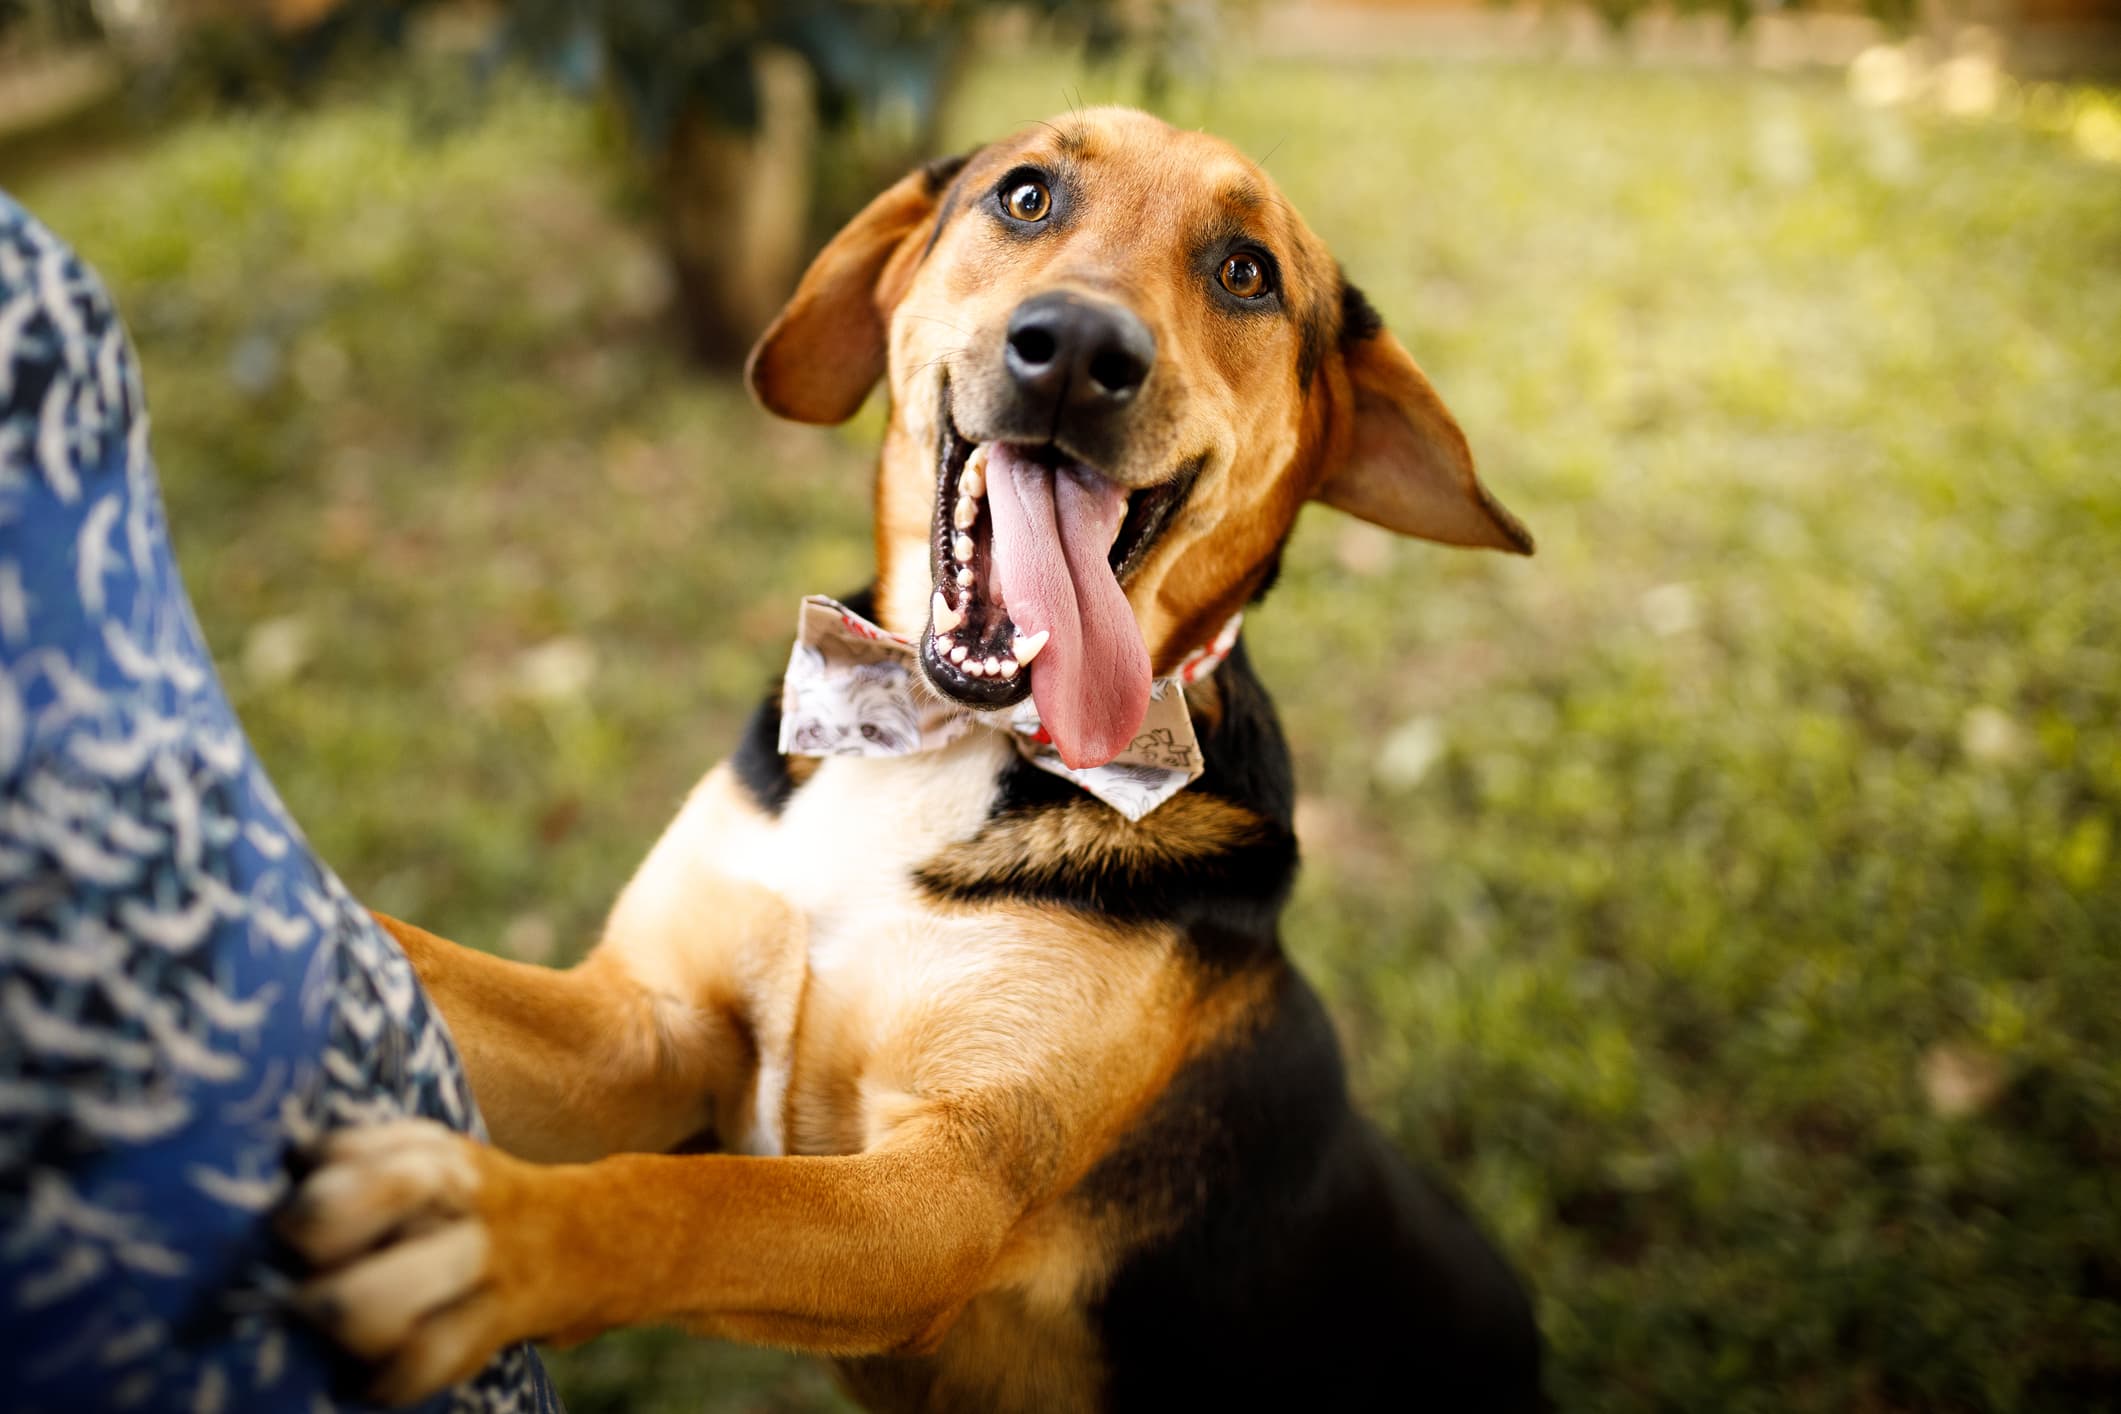 um cão de pelo cor caramelo e preto com a boca aberta e língua pra fora em pé apoiado em algo olhando fixamente para câmera e fundo desfocado.